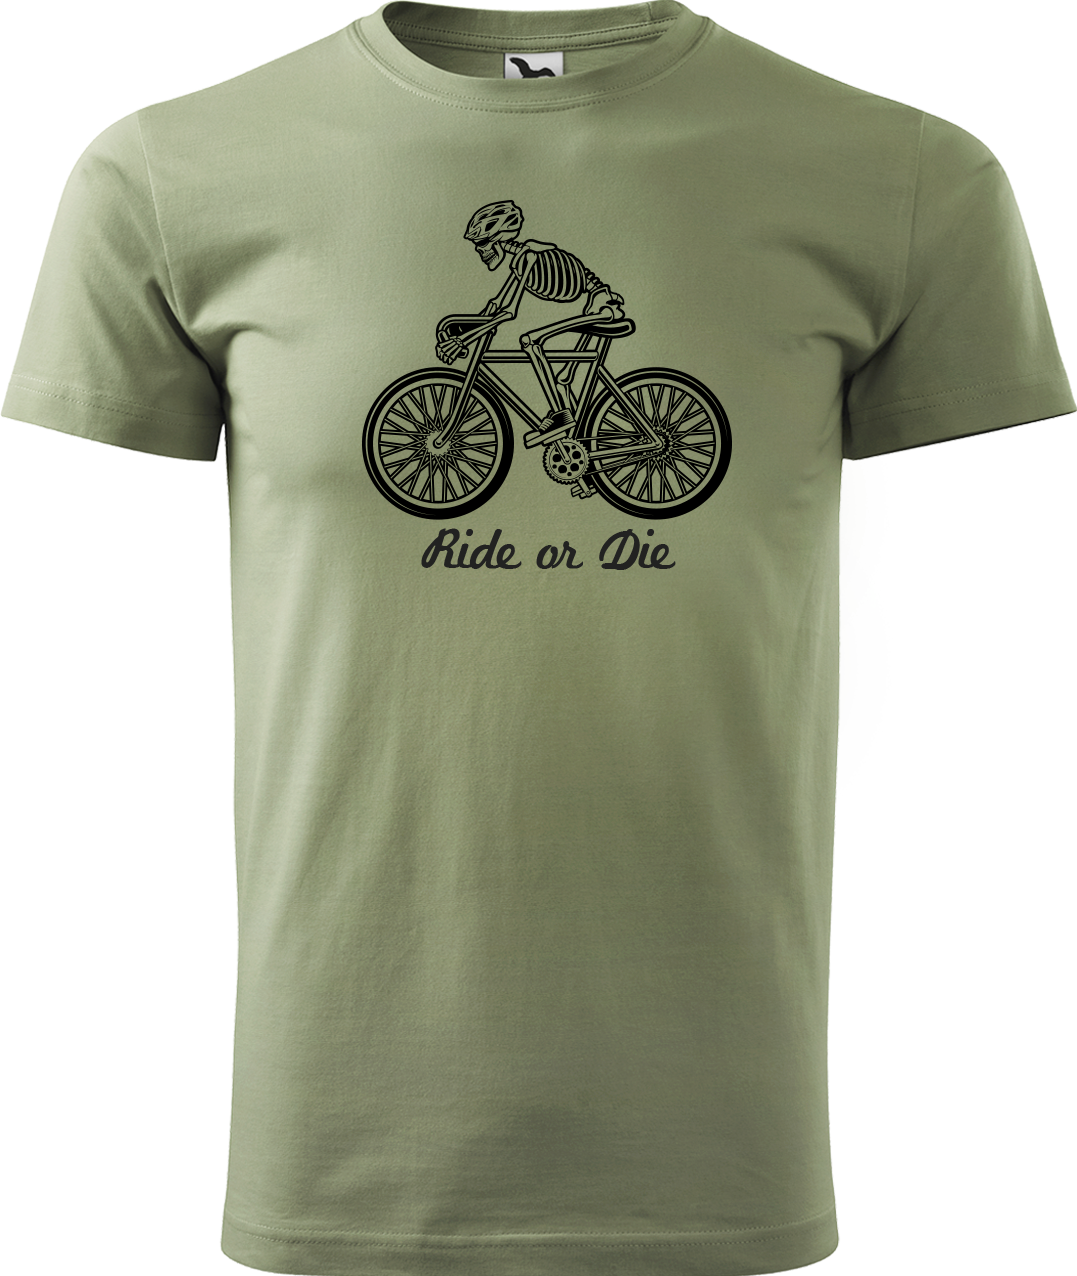 Pánské tričko pro cyklistu - Ride or Die Velikost: S, Barva: Světlá khaki (28)